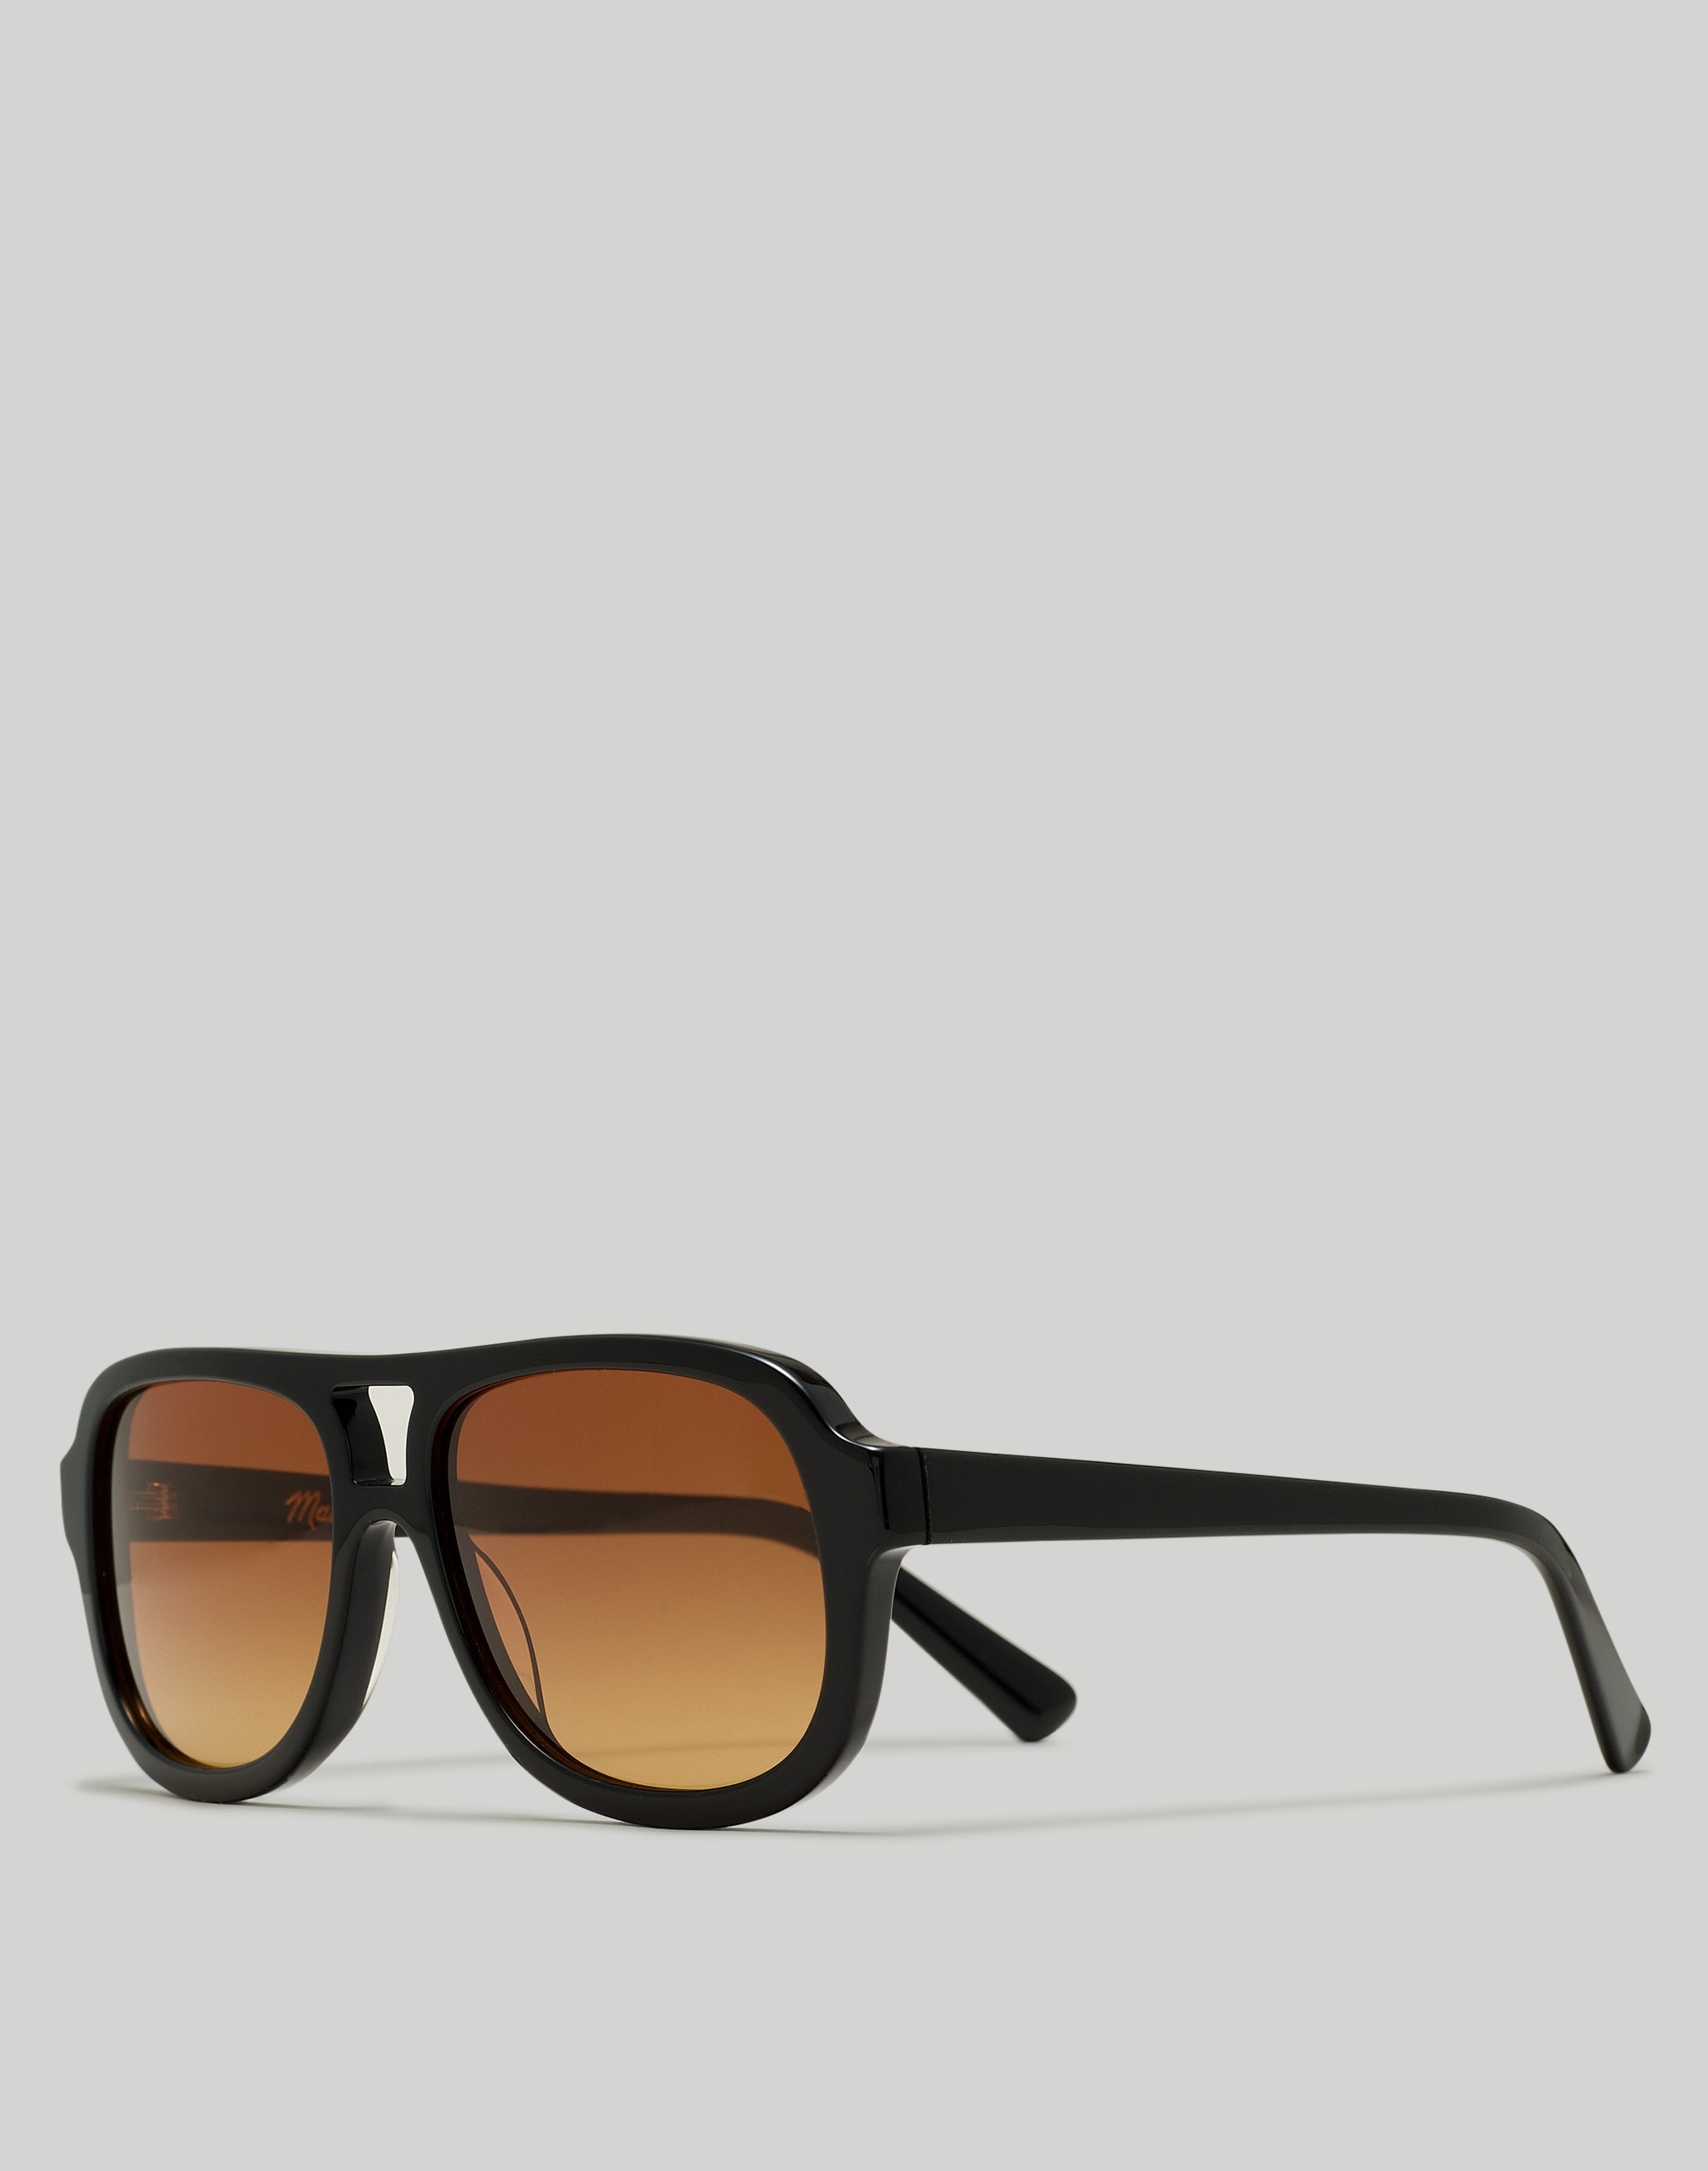 Mw Fest Aviator Sunglasses In True Black